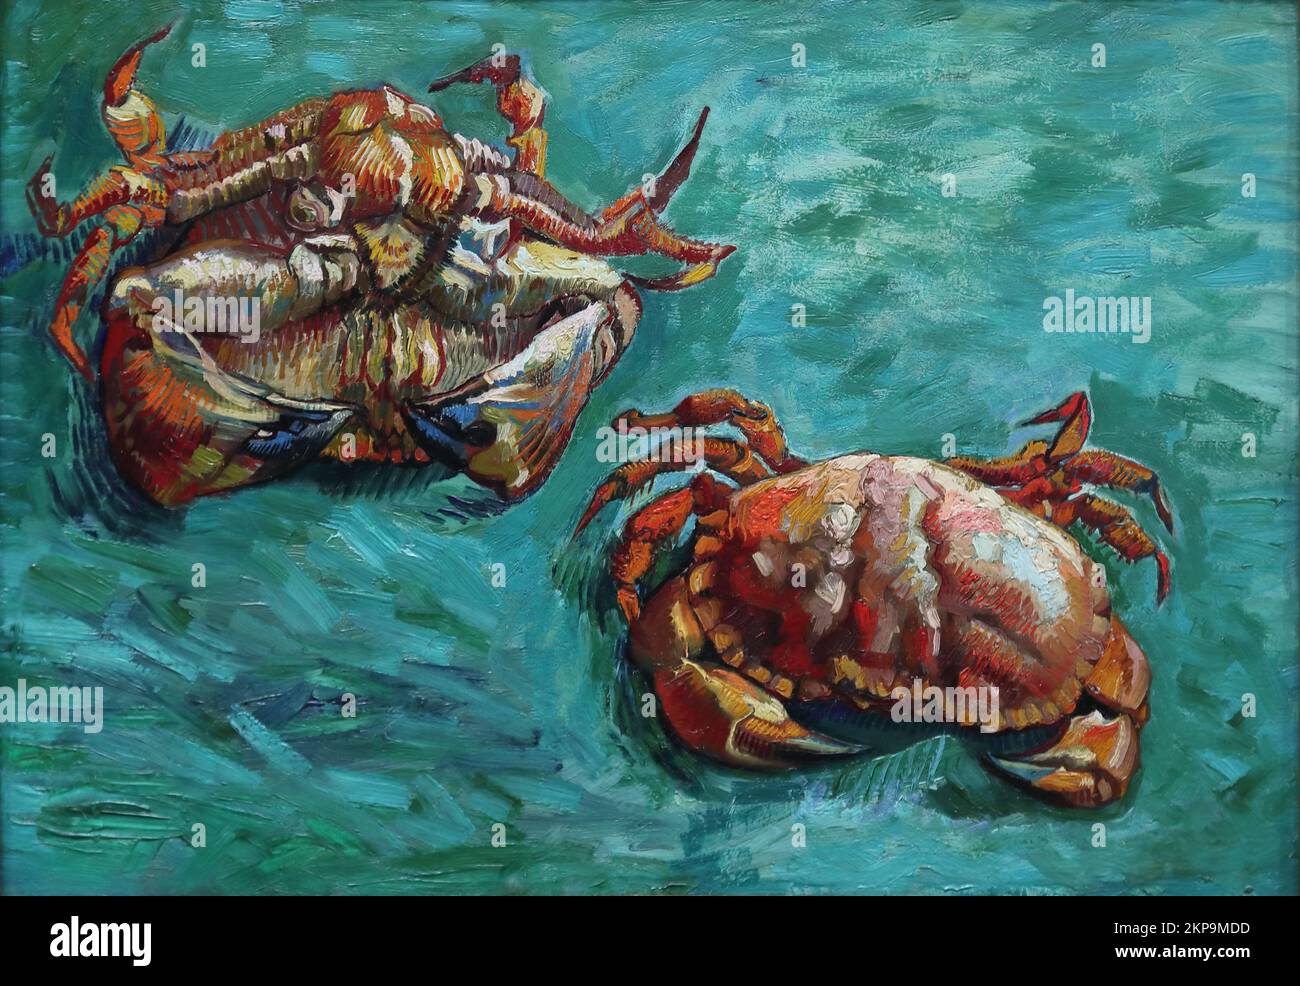 Deux crabes par le peintre post-impressionniste néerlandais Vincent van Gogh à la National Gallery, Londres, Royaume-Uni Banque D'Images